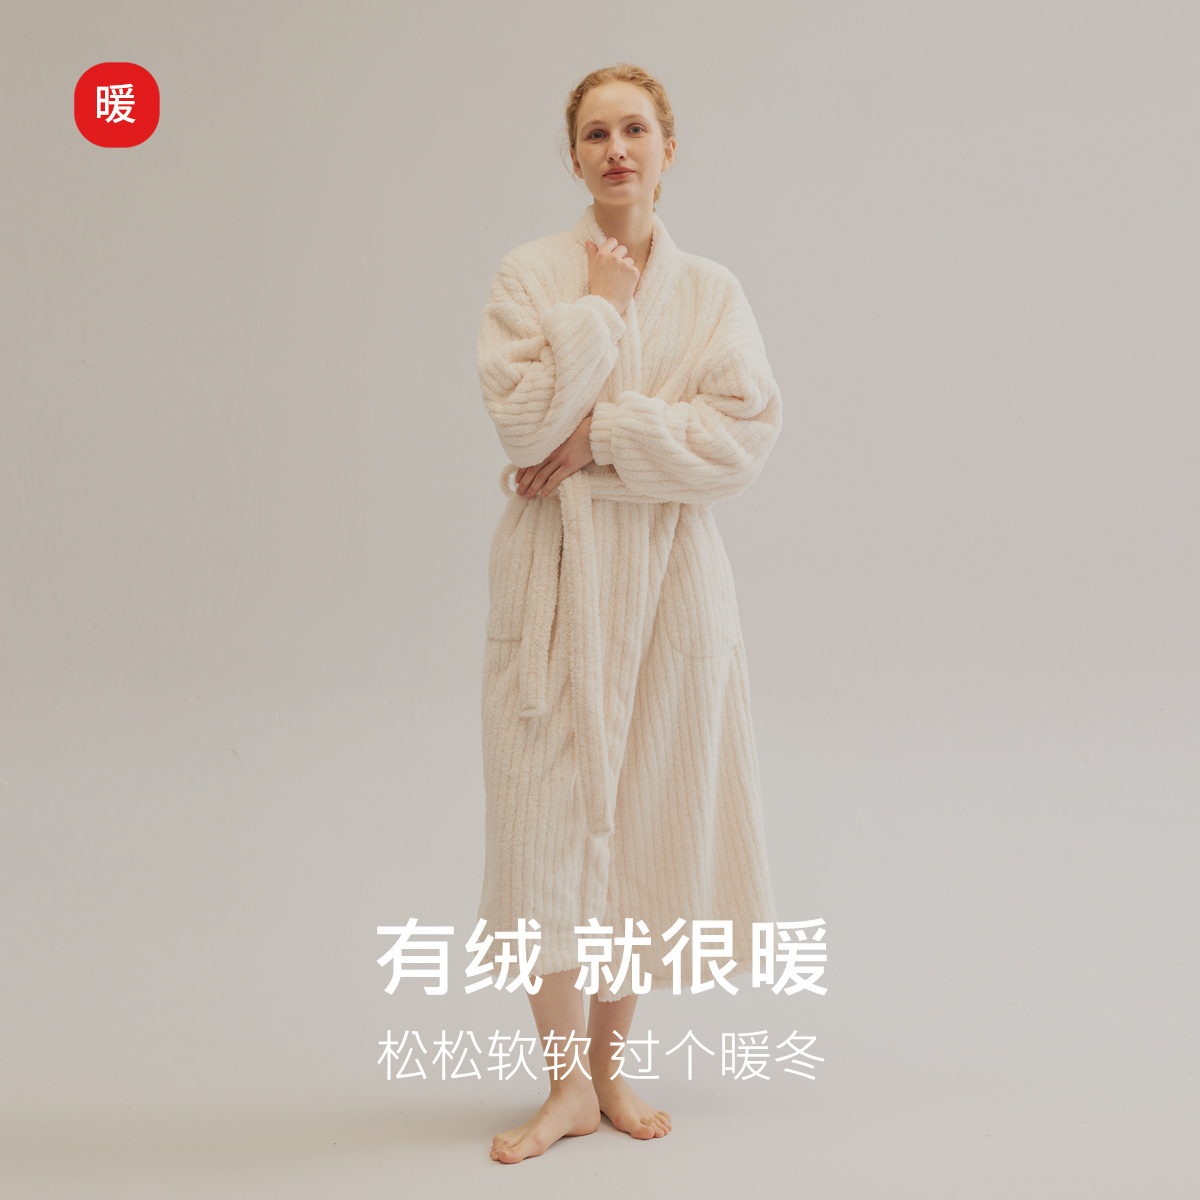 舒棉绒法式白色珊瑚绒睡袍秋冬季新款加绒睡袍浴袍气质保暖家居服